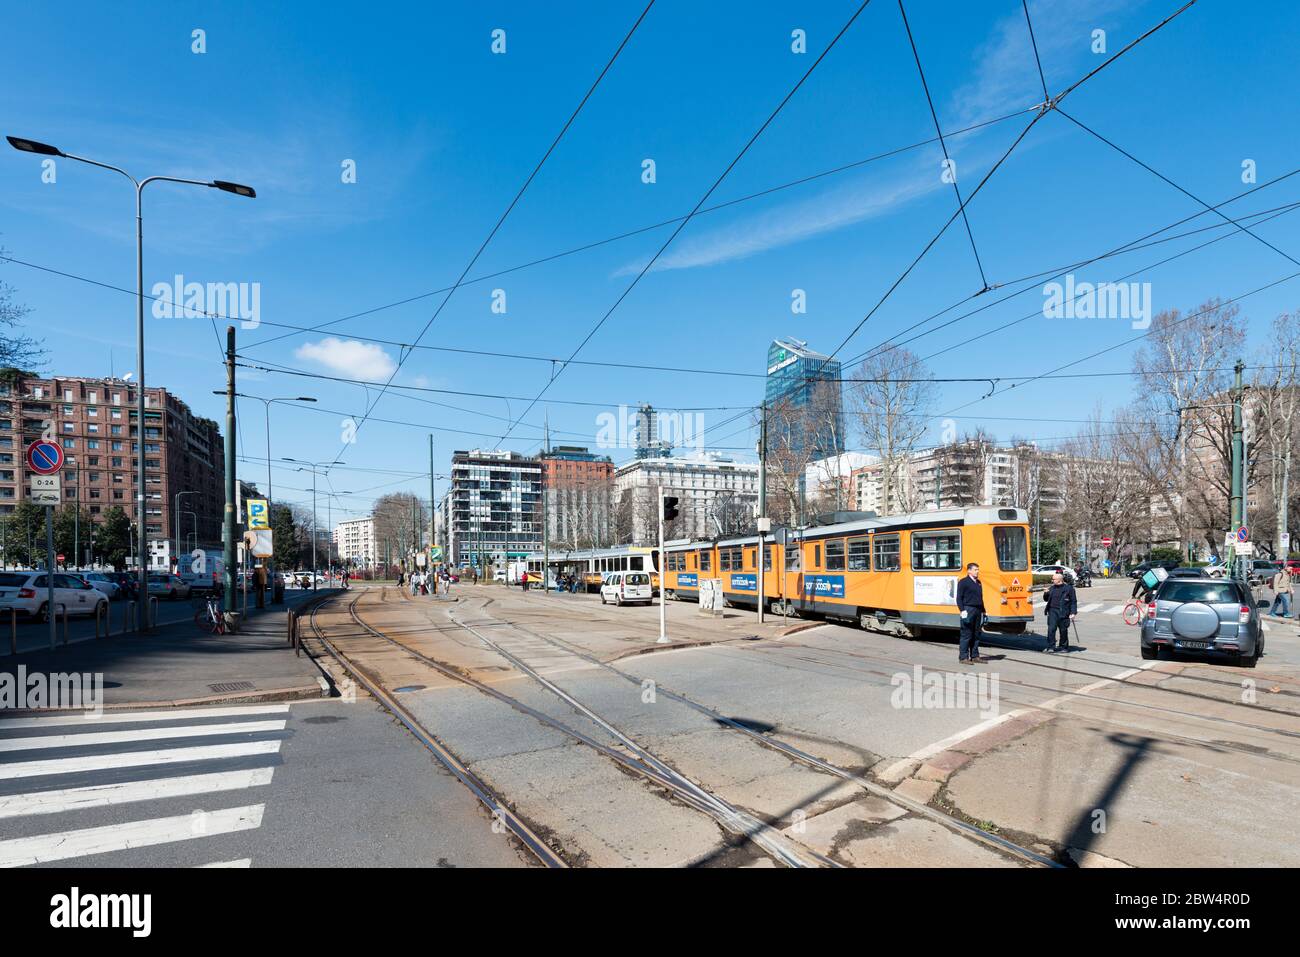 MILÁN, ITALIA - 16, MARZO, 2018: Imagen horizontal del ferrocarril de tranvía situado en el centro de Milán, Italia Foto de stock